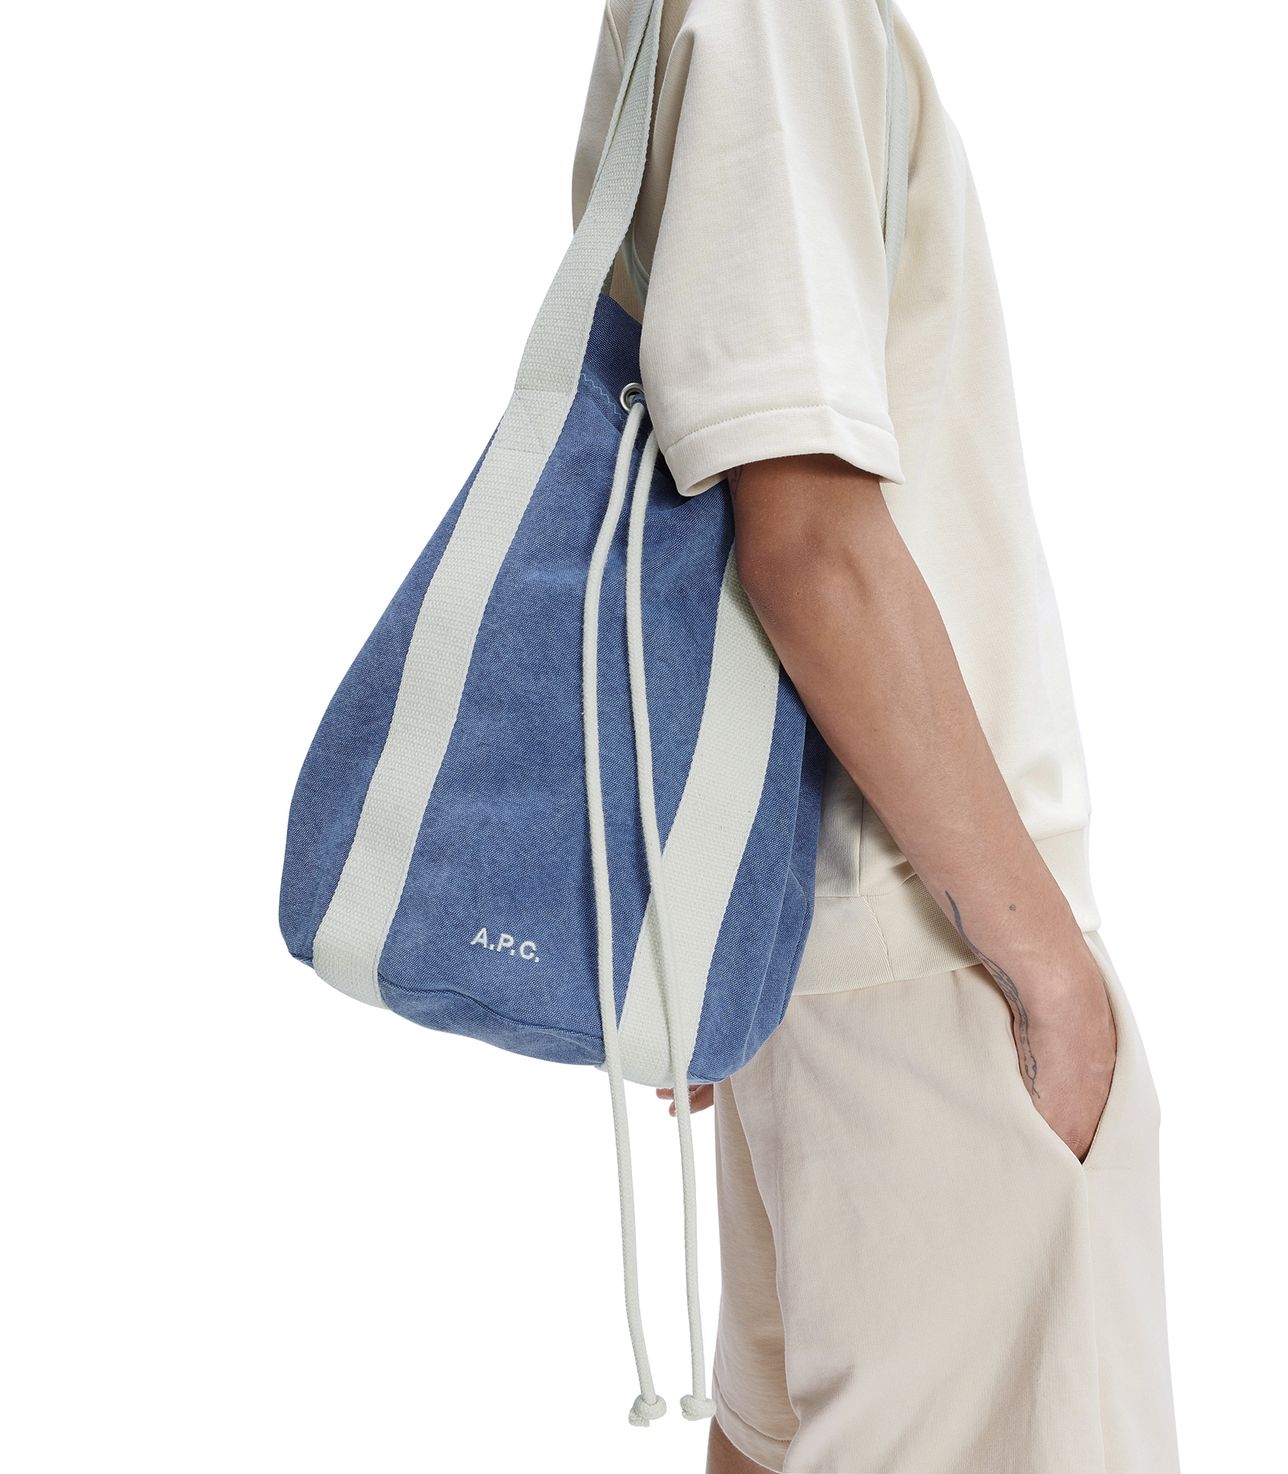 Angelo shopping bag NAVY BLUE APC